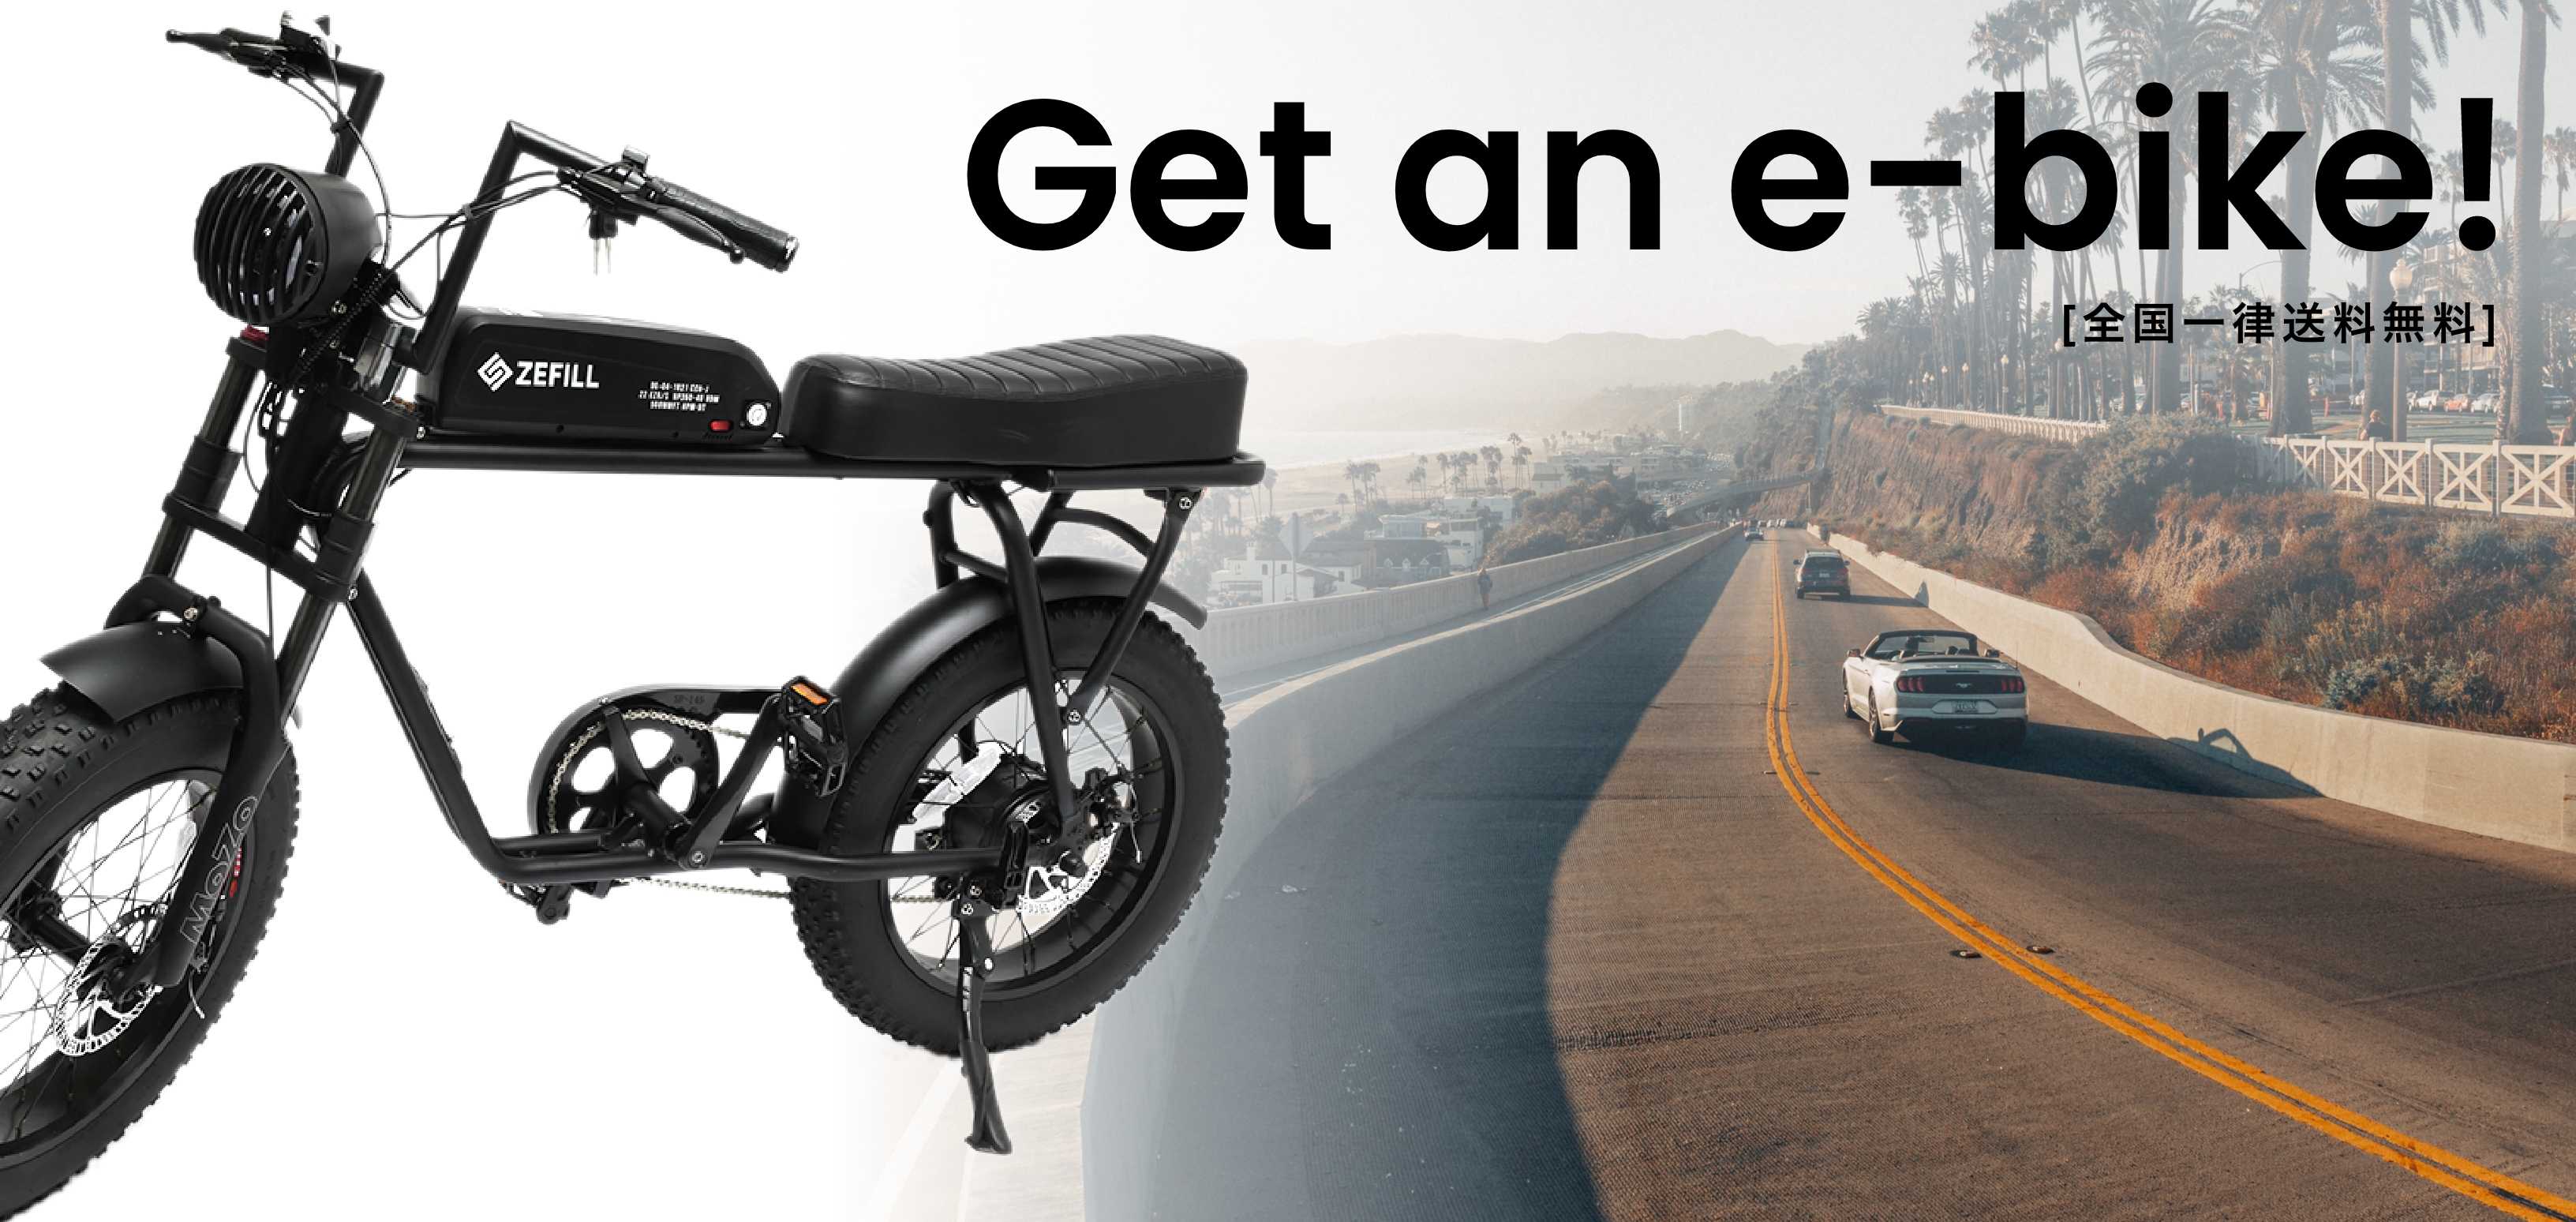 【新ブランドも追加】Get an e-bike! eバイクのある生活を手に入れよう